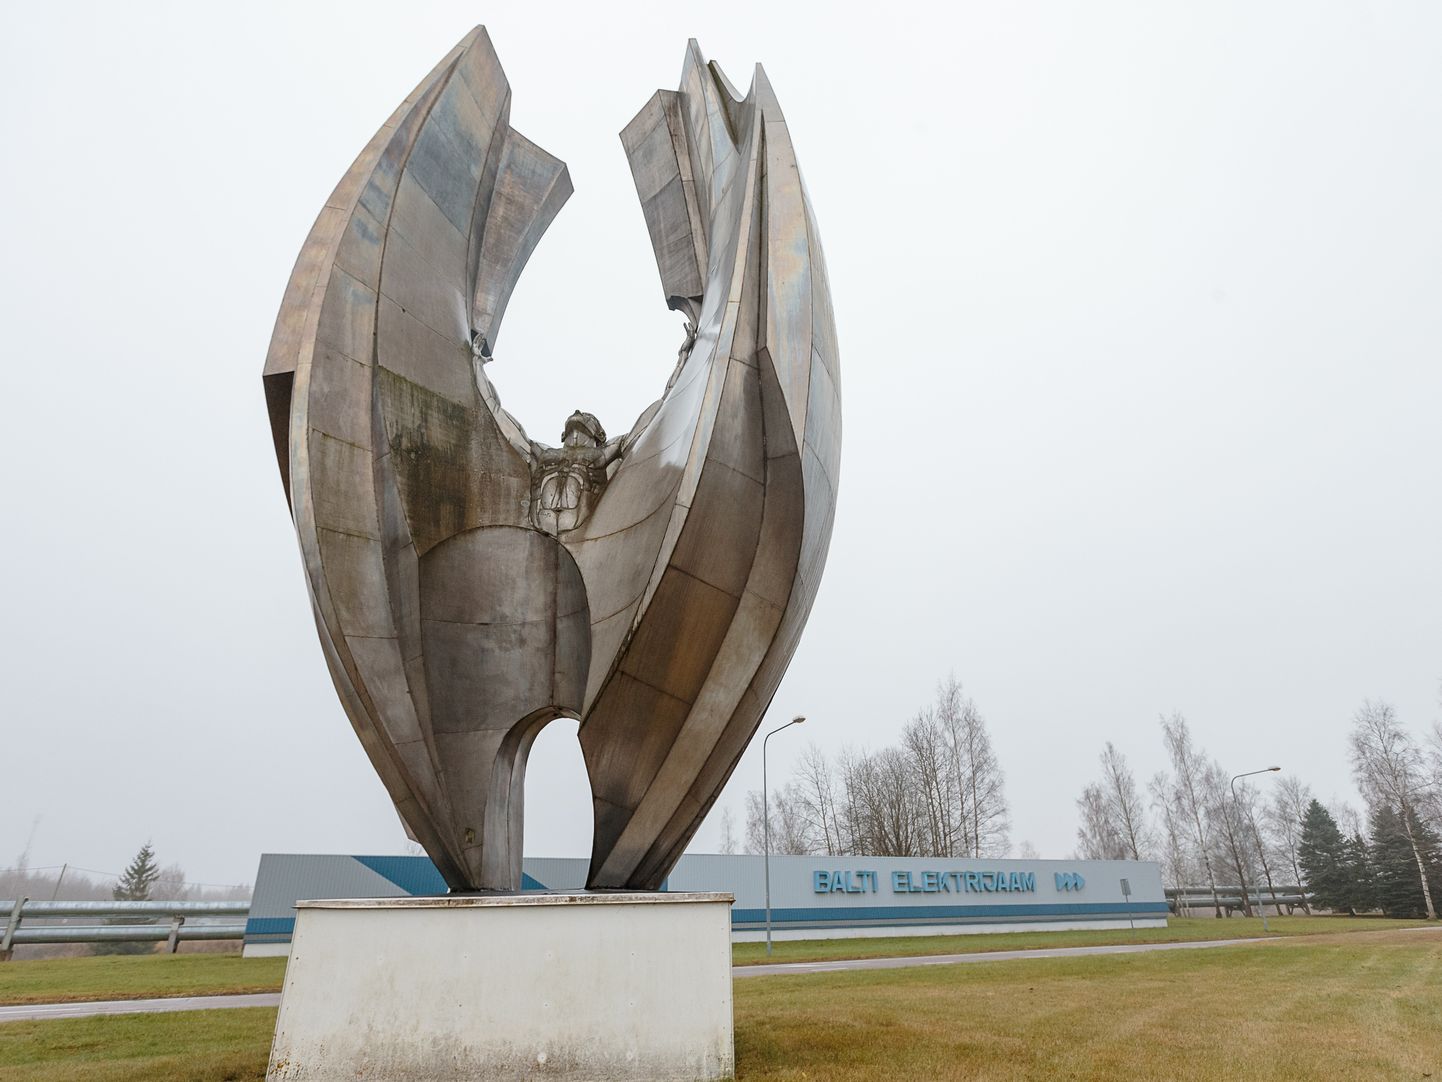 Eesti Energia Balti elektrijaama sümbol − tiibu taeva poole sirutav Ikaros.